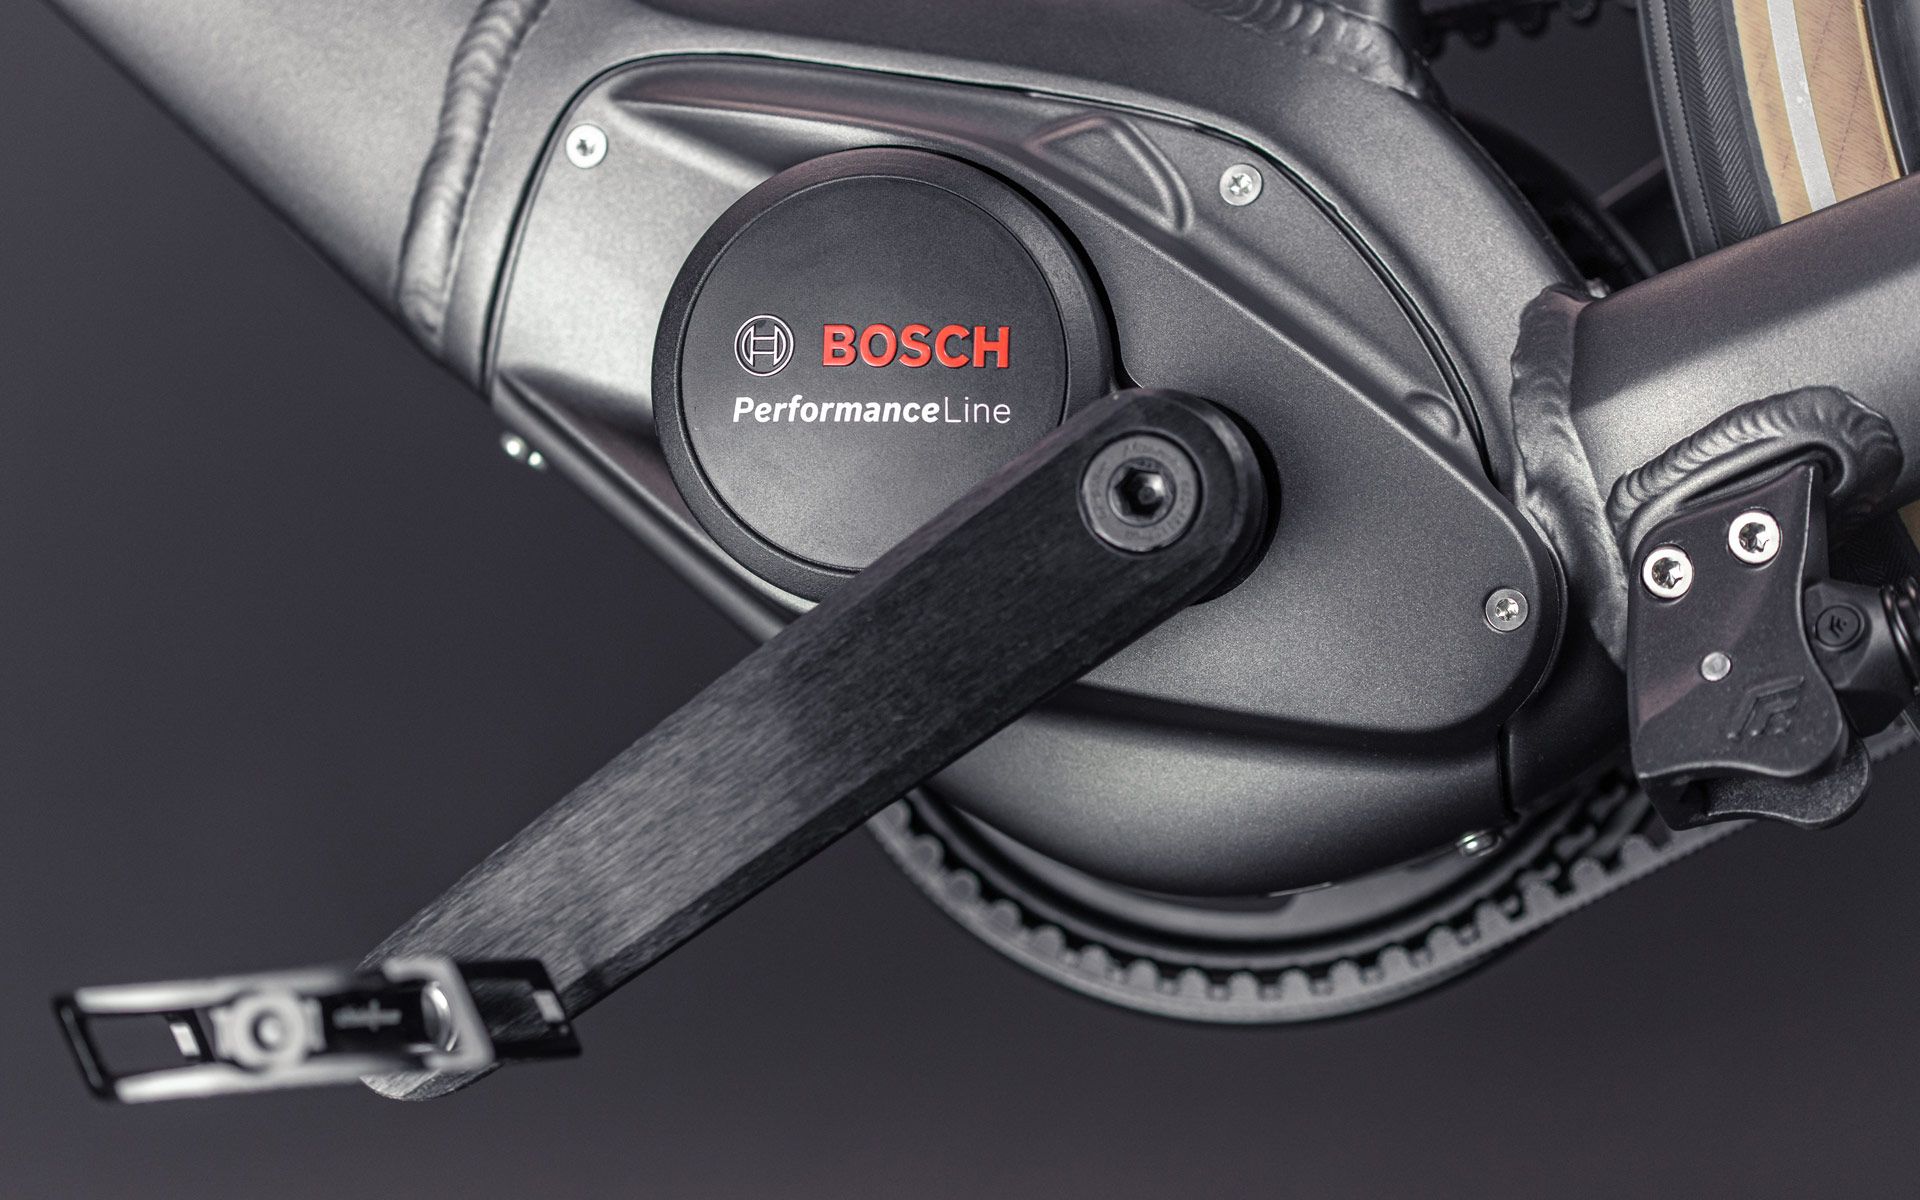 Je nach gewünschter Unterstützung, stehen zwei Varianten zur Auswahl: Bosch Active Line Plus (max. 50 Nm) oder Performance Line (max. 65 Nm).